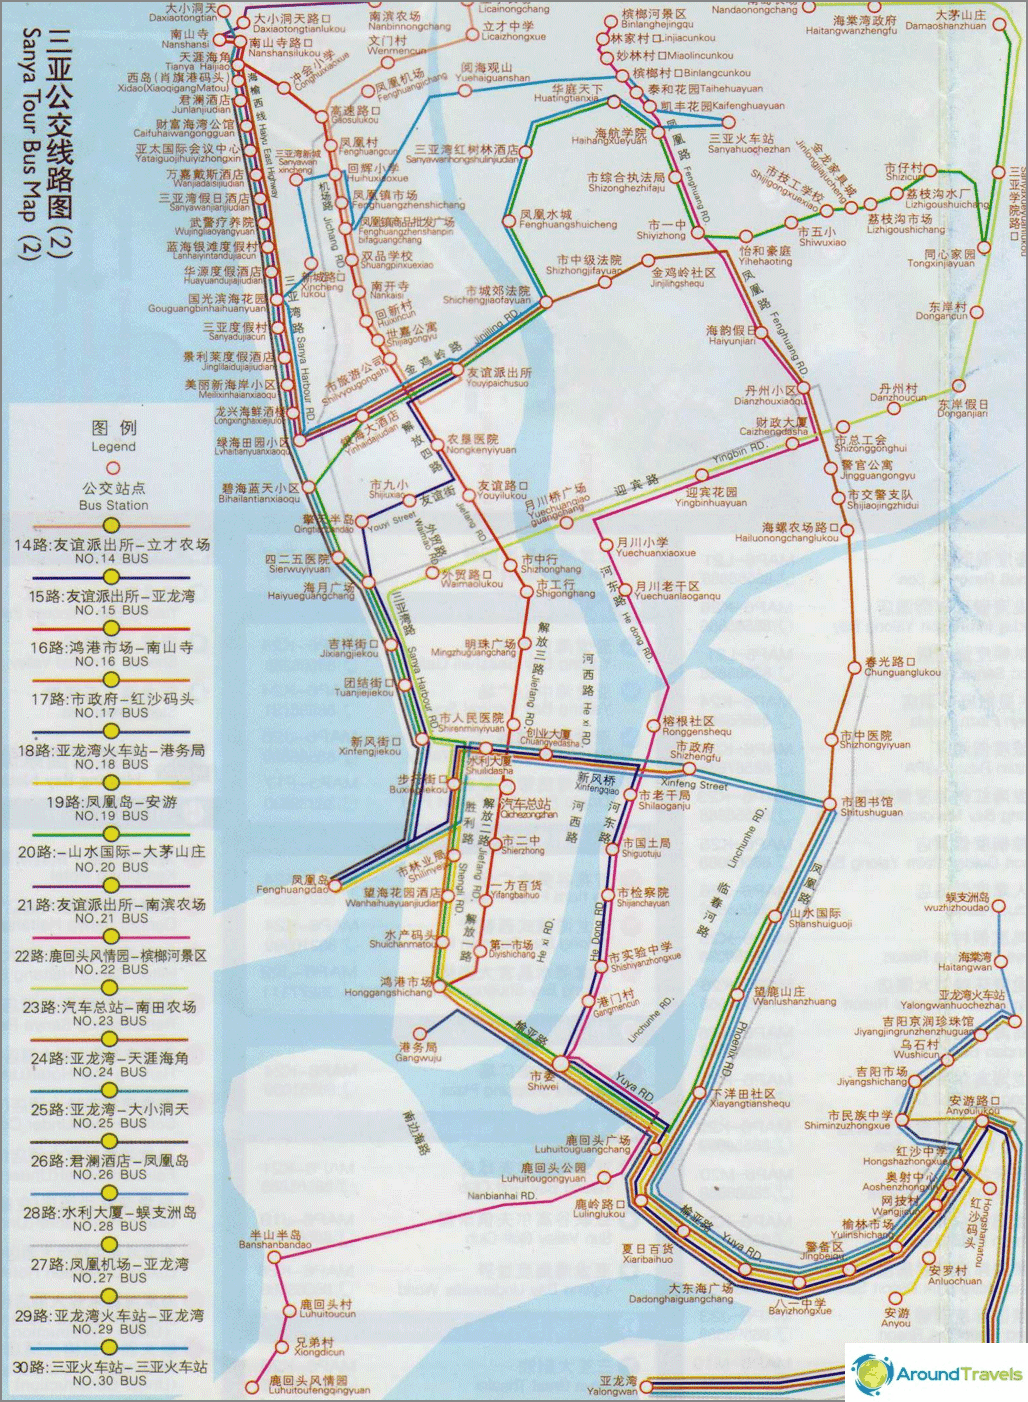 Bus map in Sanya (clickable)